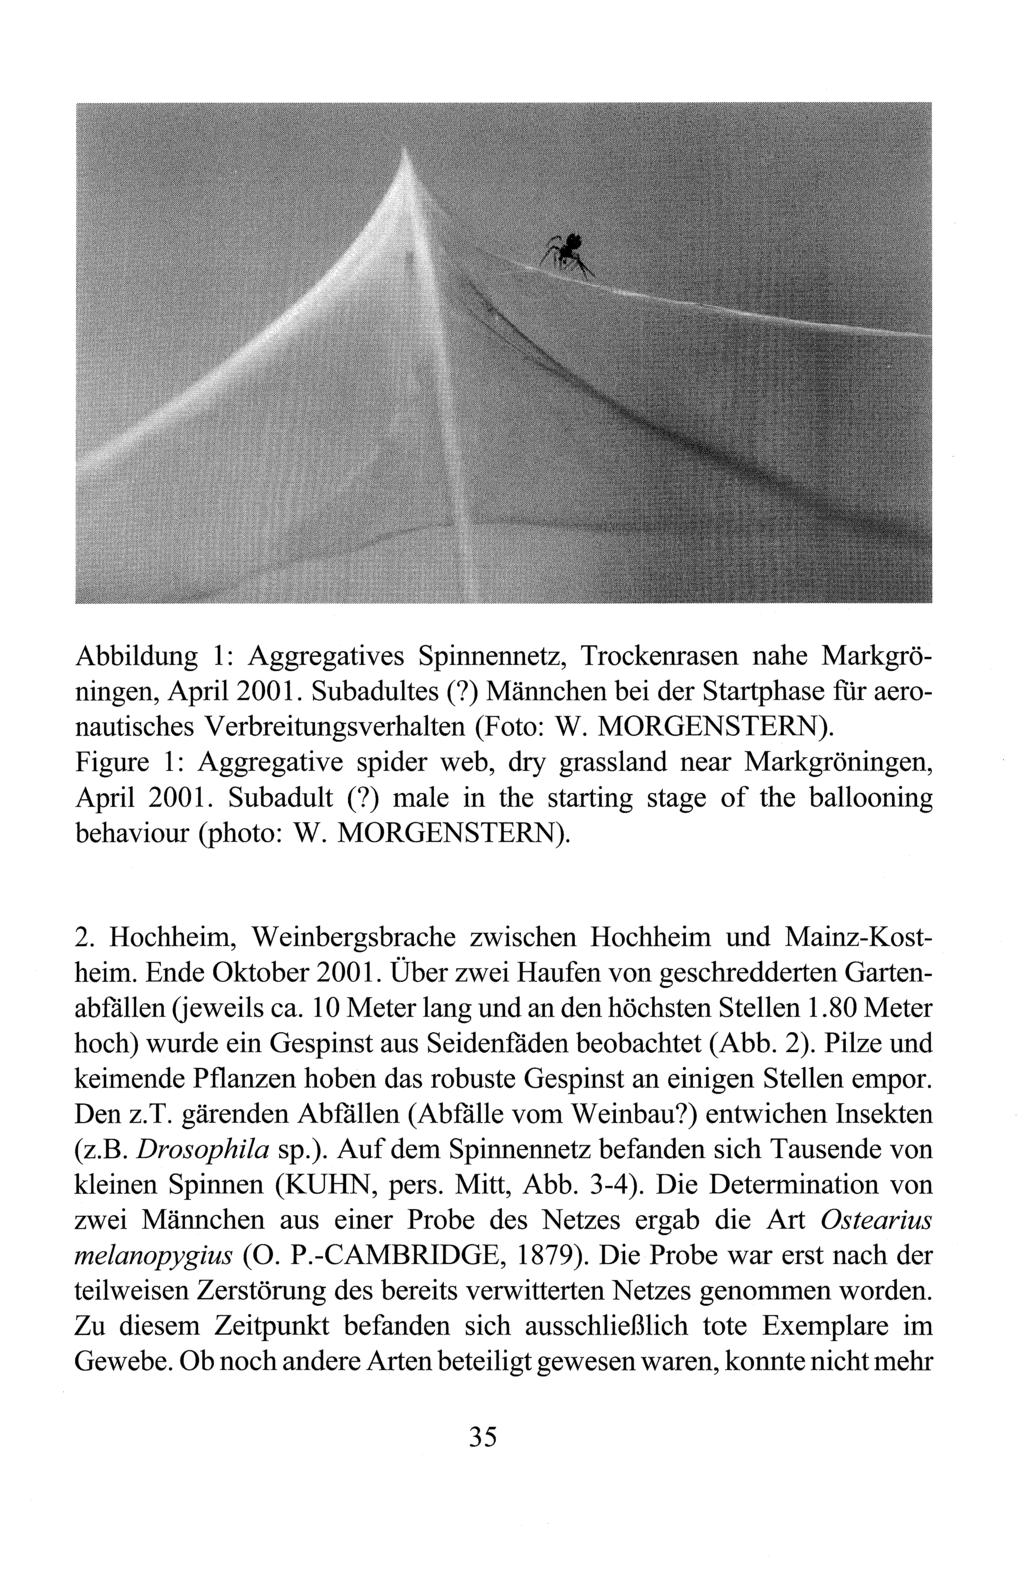 Abbildung 1: Aggregatives Spinnennetz, Trockenrasen nahe Markgroningen, April 2001. Subadultes (?) Mannchen bei der Startphase fur aeronautisches Verbreitungsverhalten (Foto: W. MORGENSTERN).